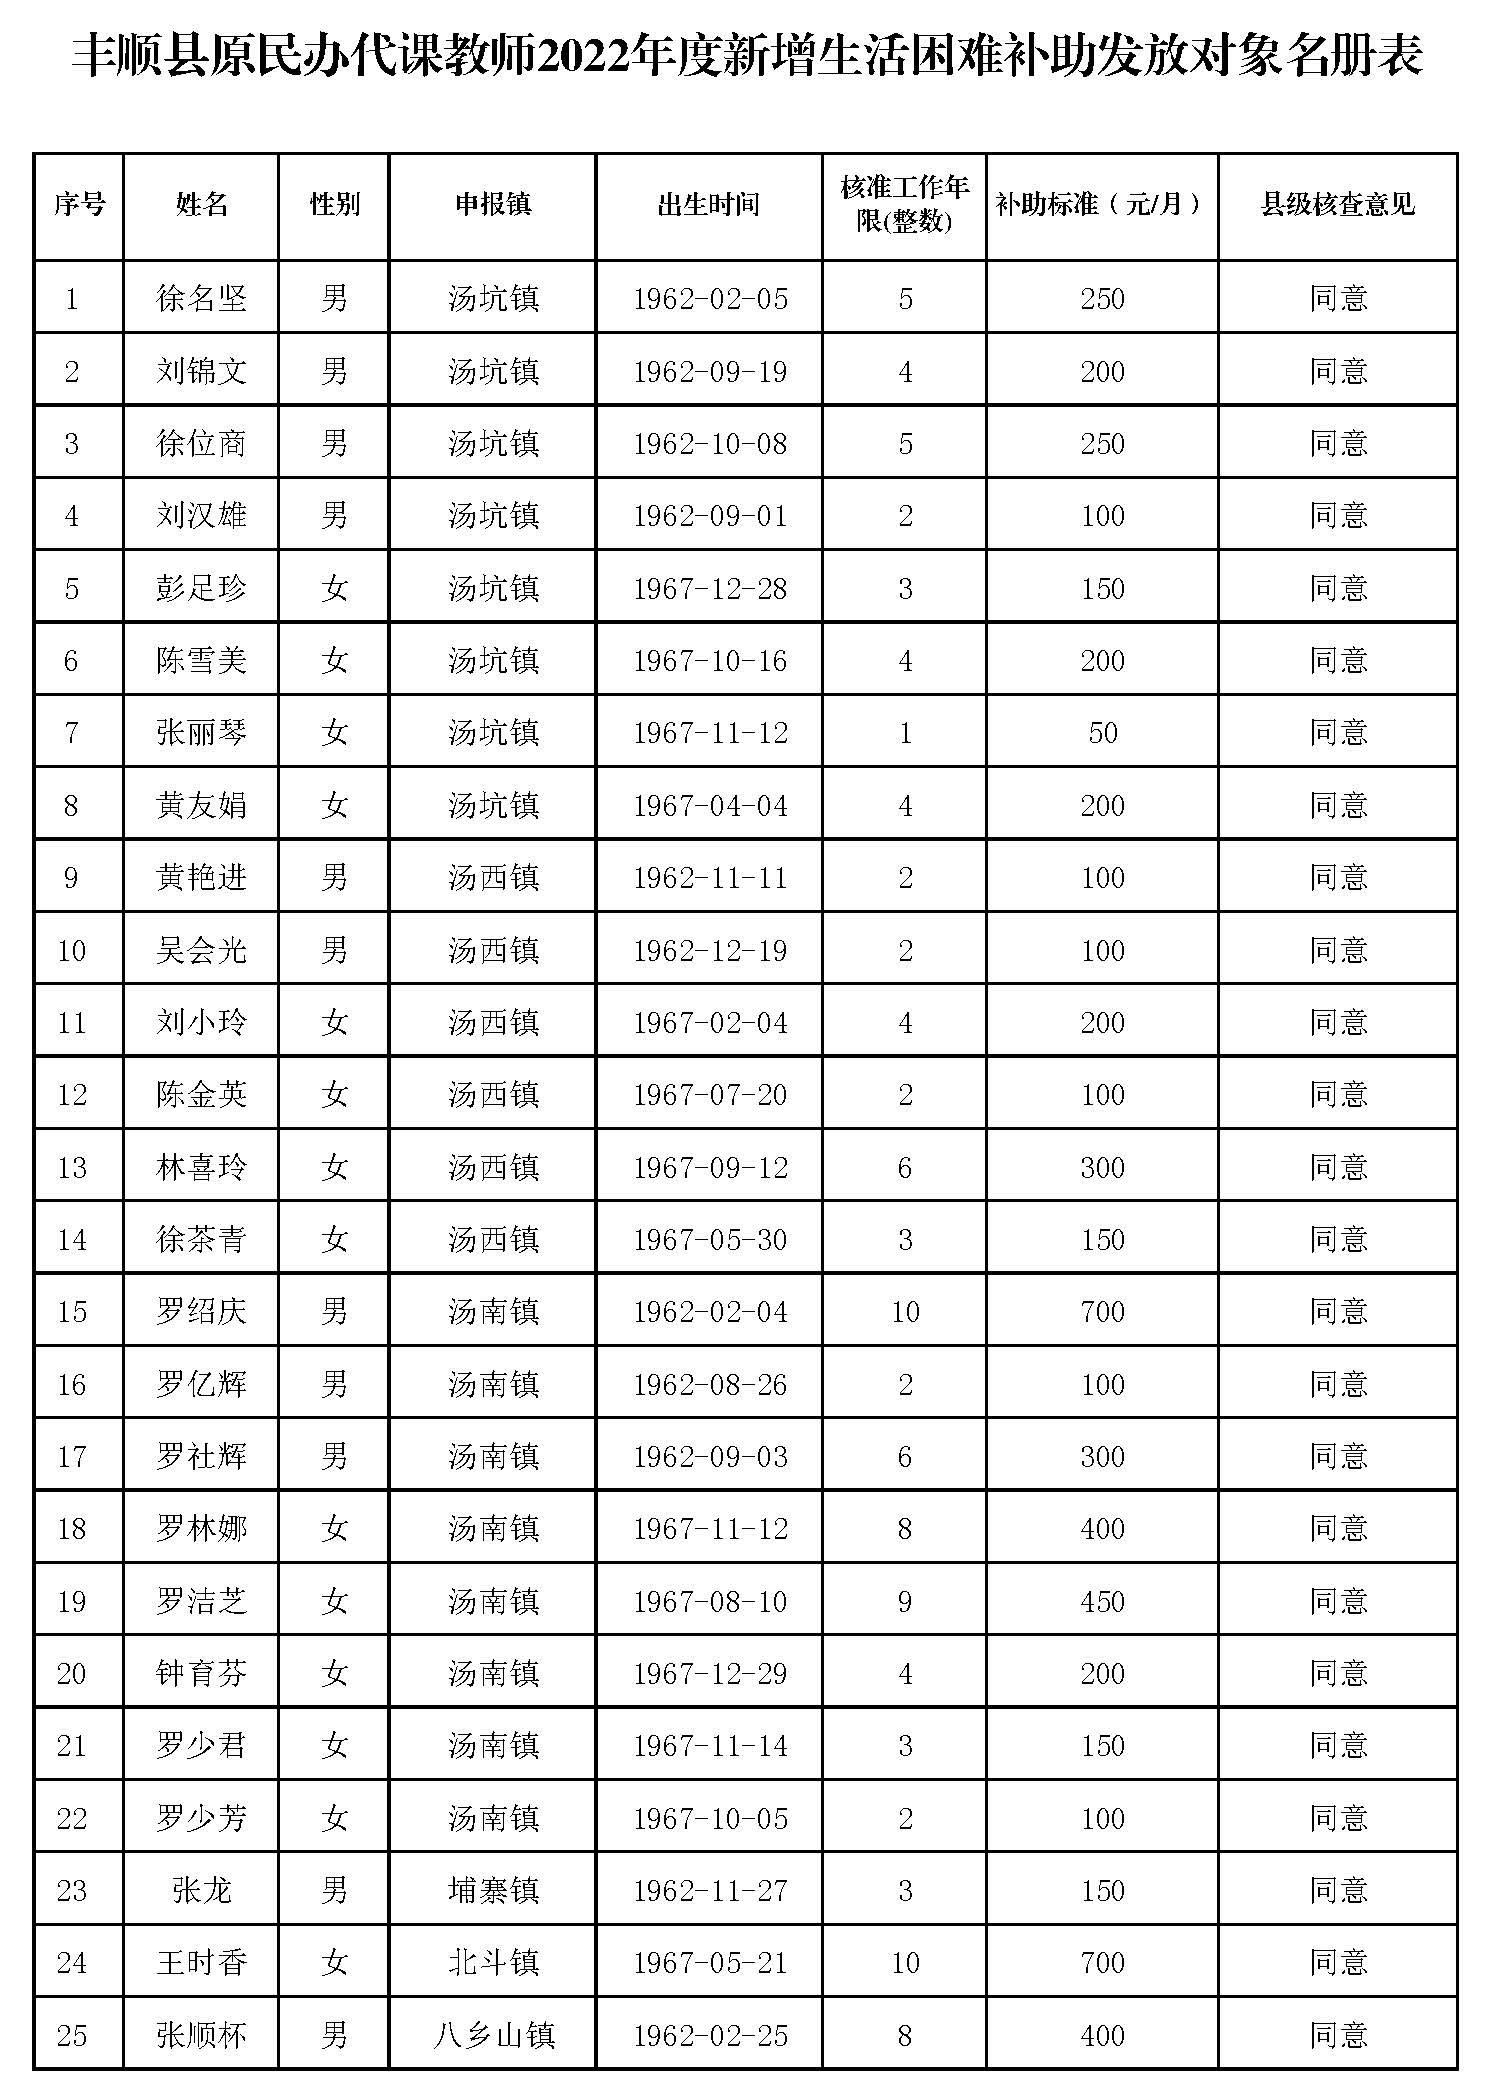 丰顺县原民办代课教师2022年度新增生活困难补助发放对象名册表_页面_1.jpg